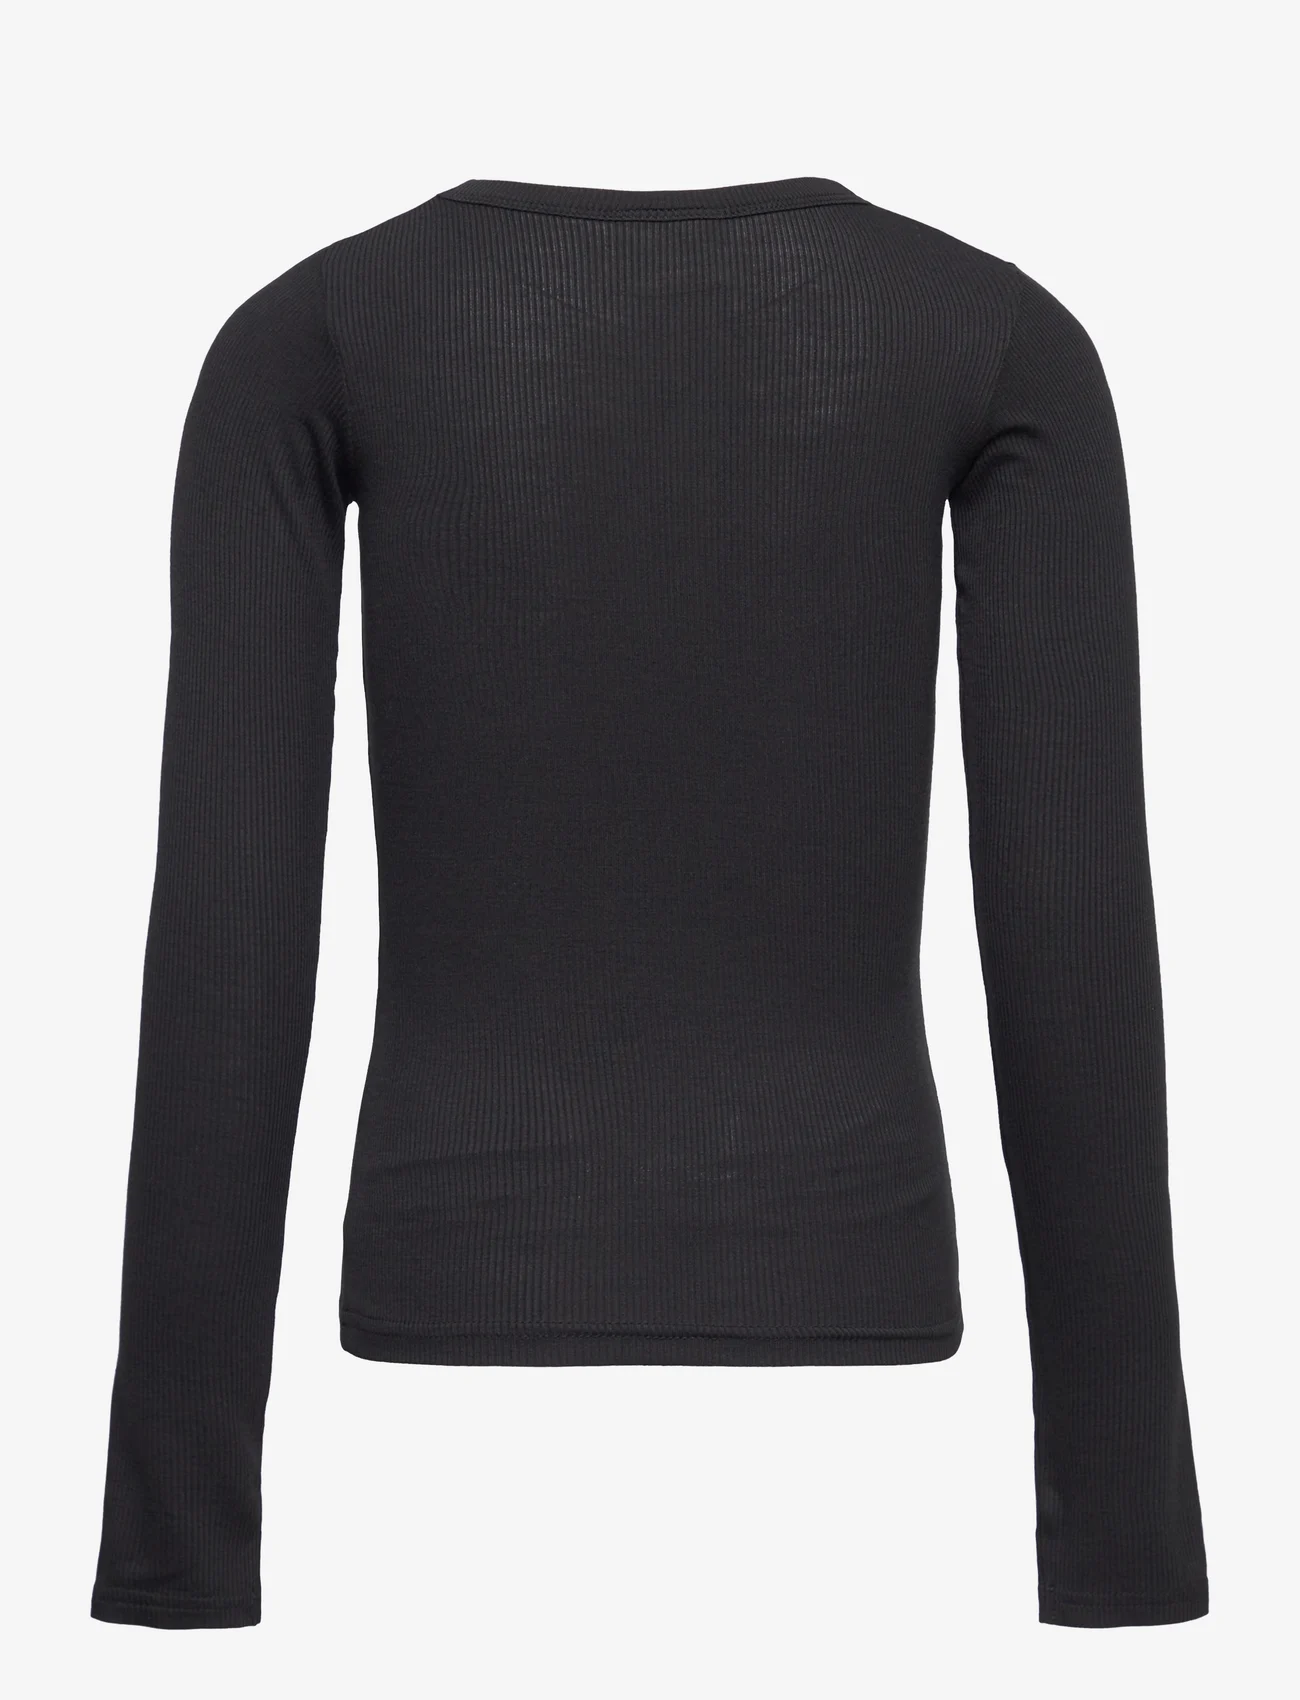 Sofie Schnoor Young - T-shirt long-sleeve - marškinėliai ilgomis rankovėmis - black - 1